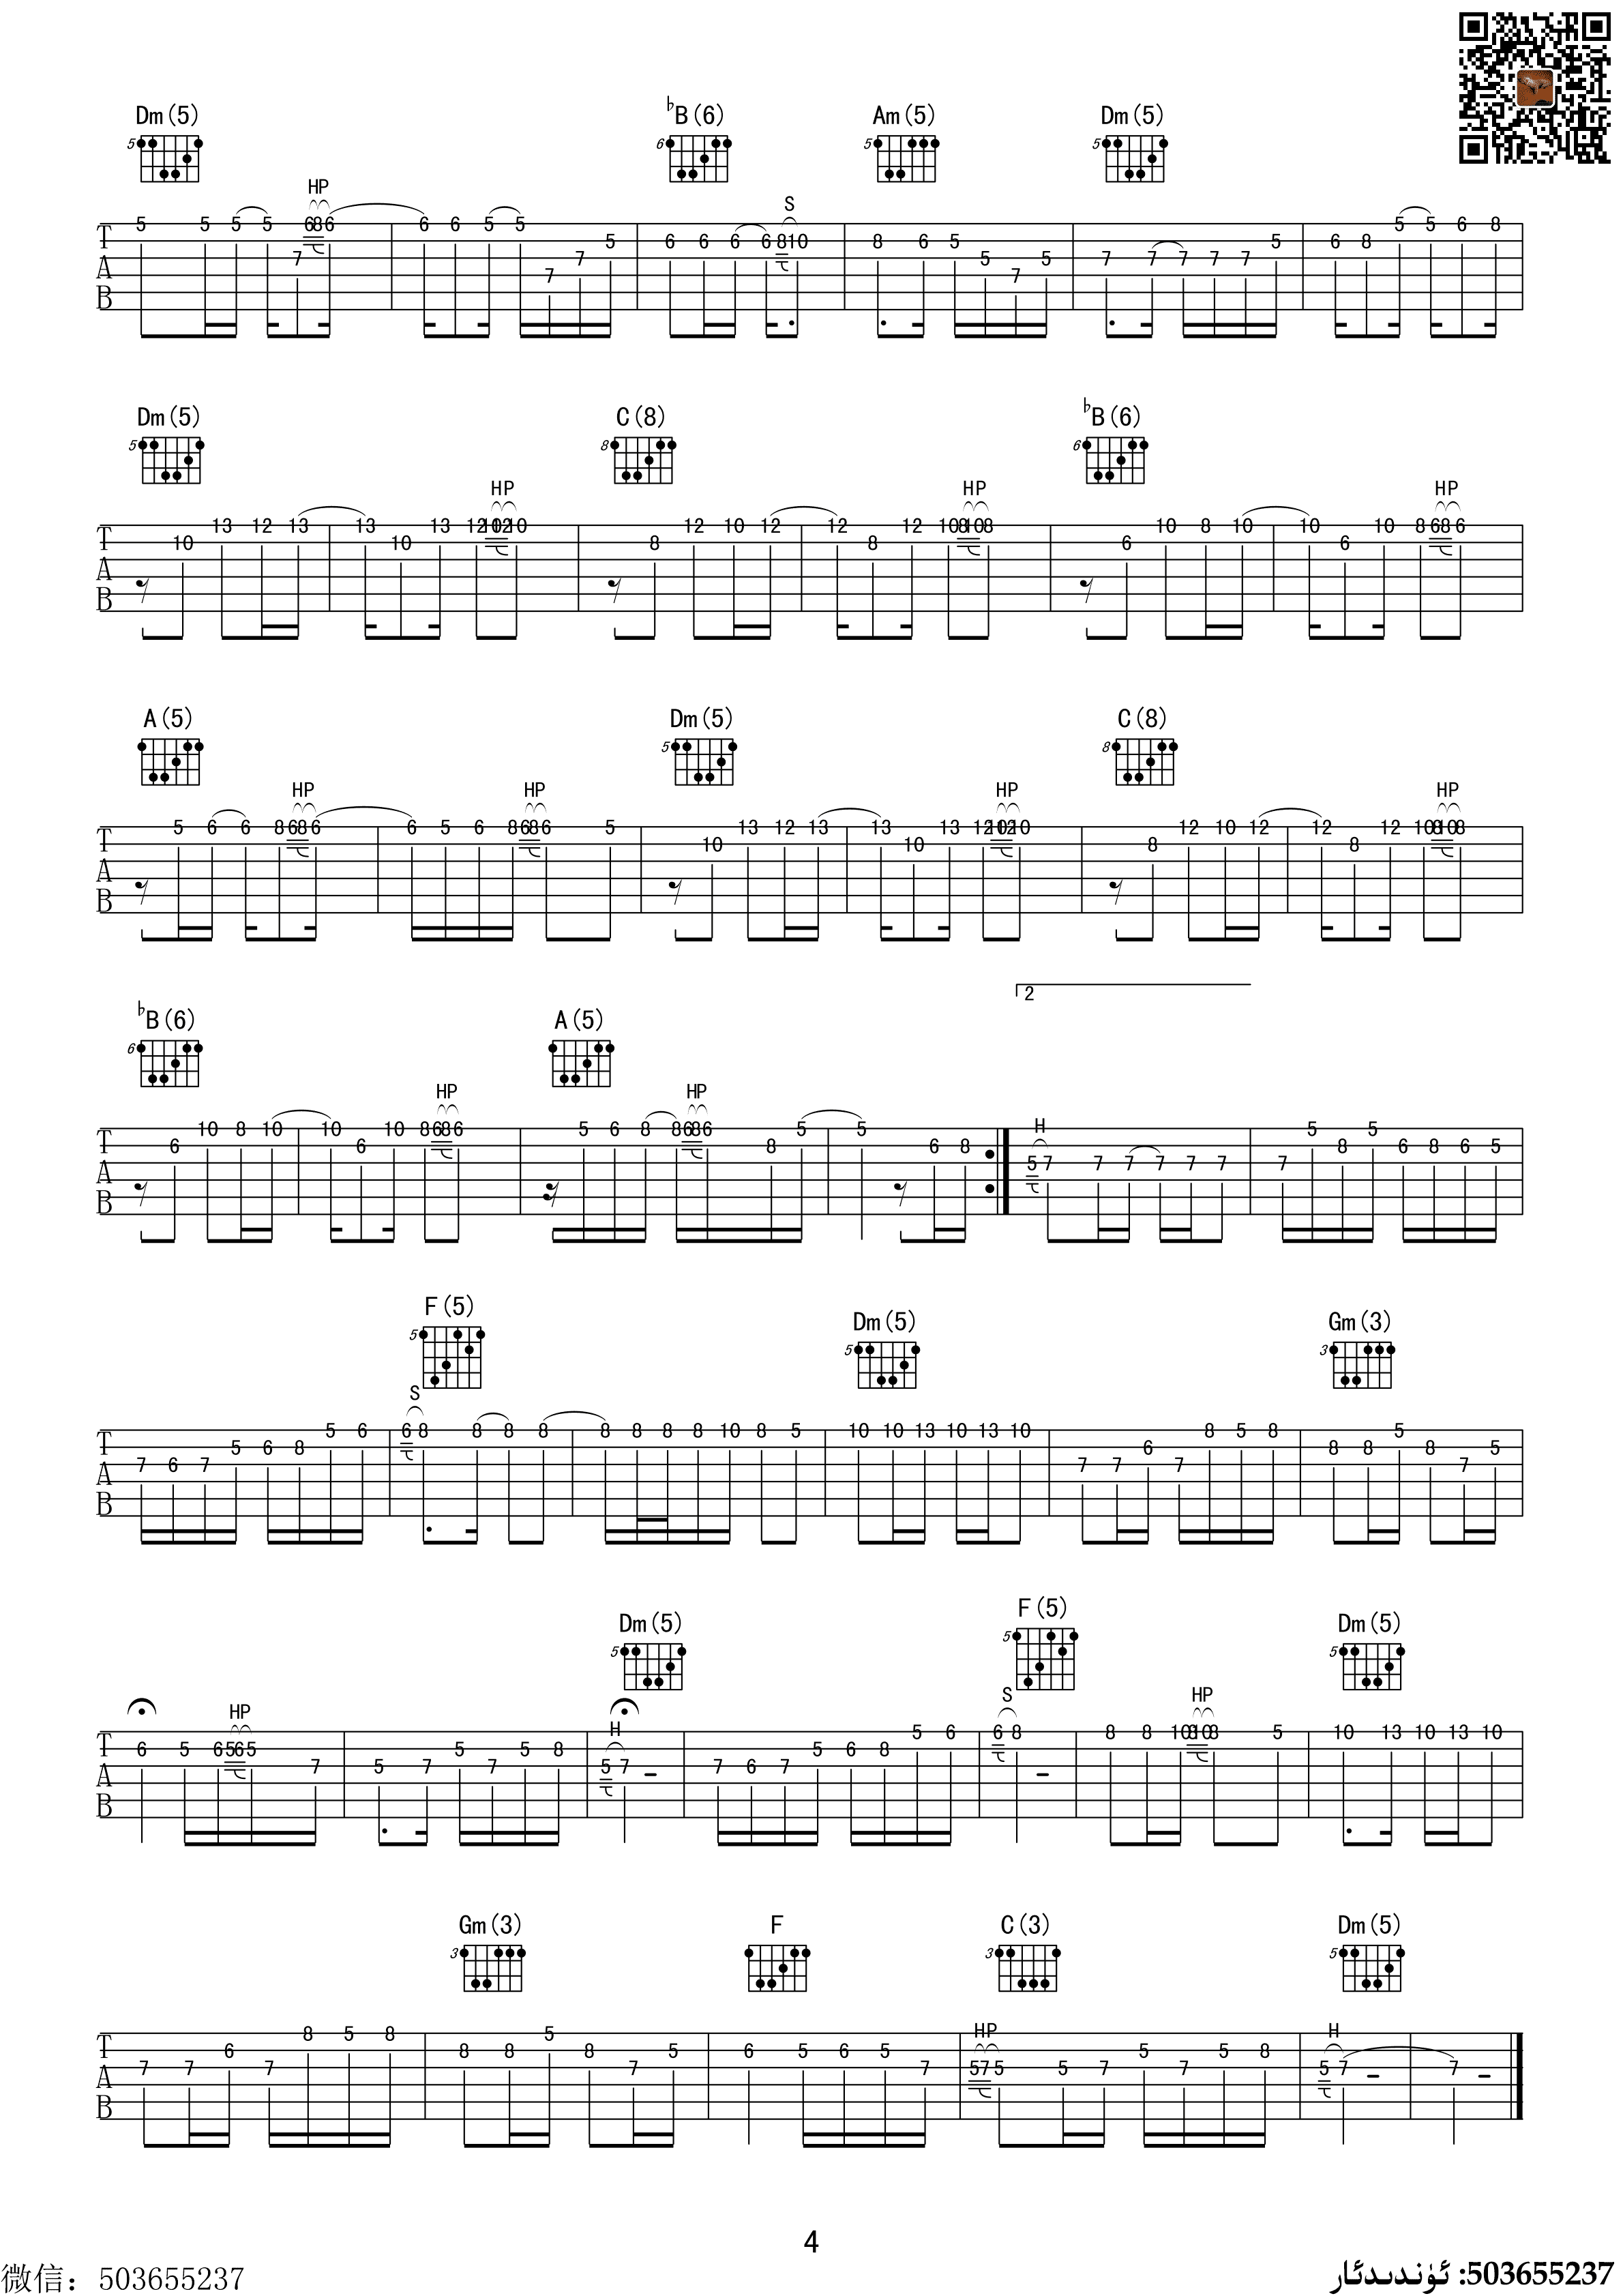 中文弗拉门戈吉他基础教程第二部分曲式PALO练习_哔哩哔哩_bilibili